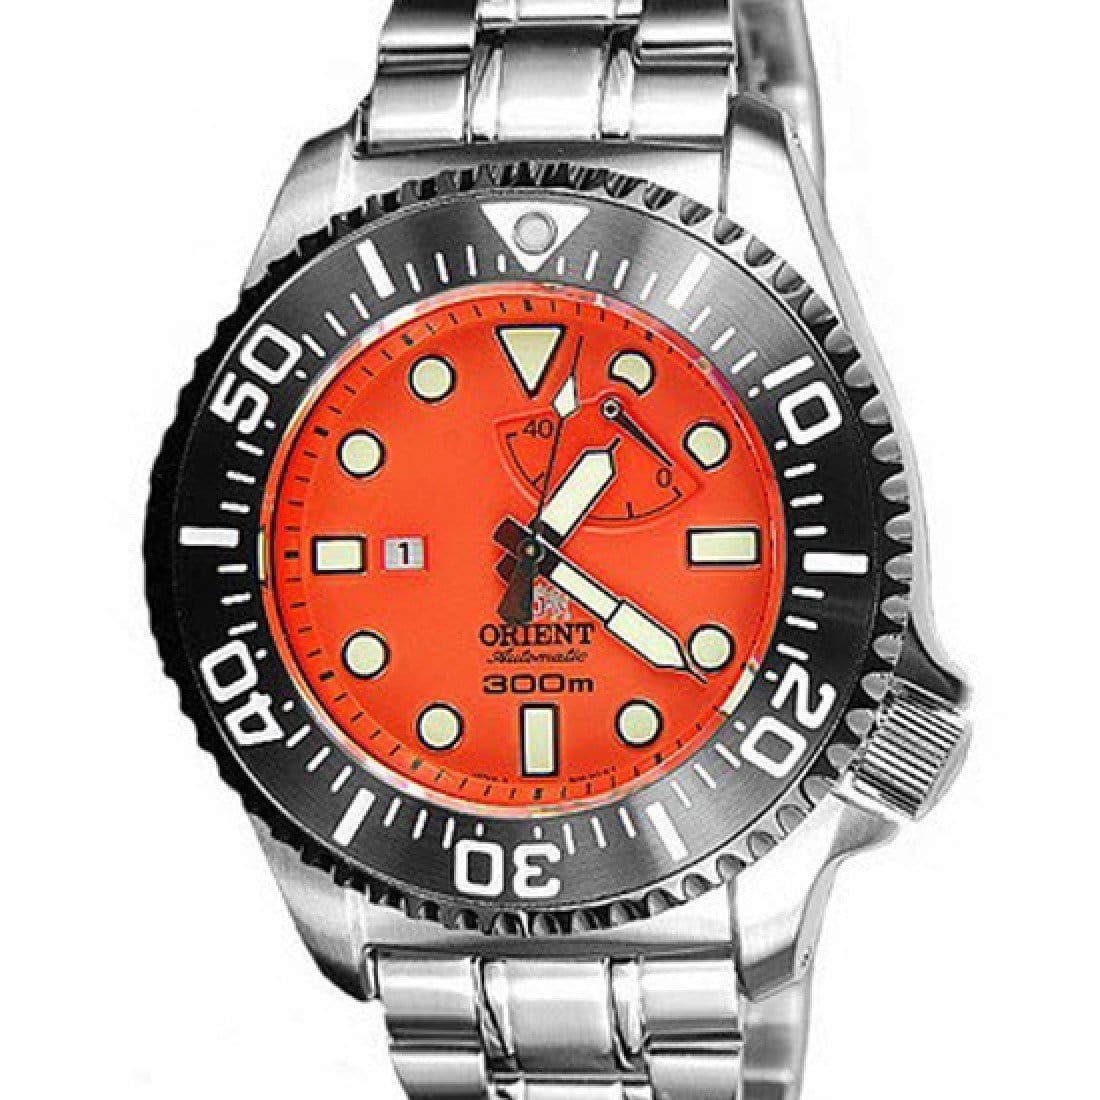 Orient EL02001M SEL02001M Automatic Dive Watch